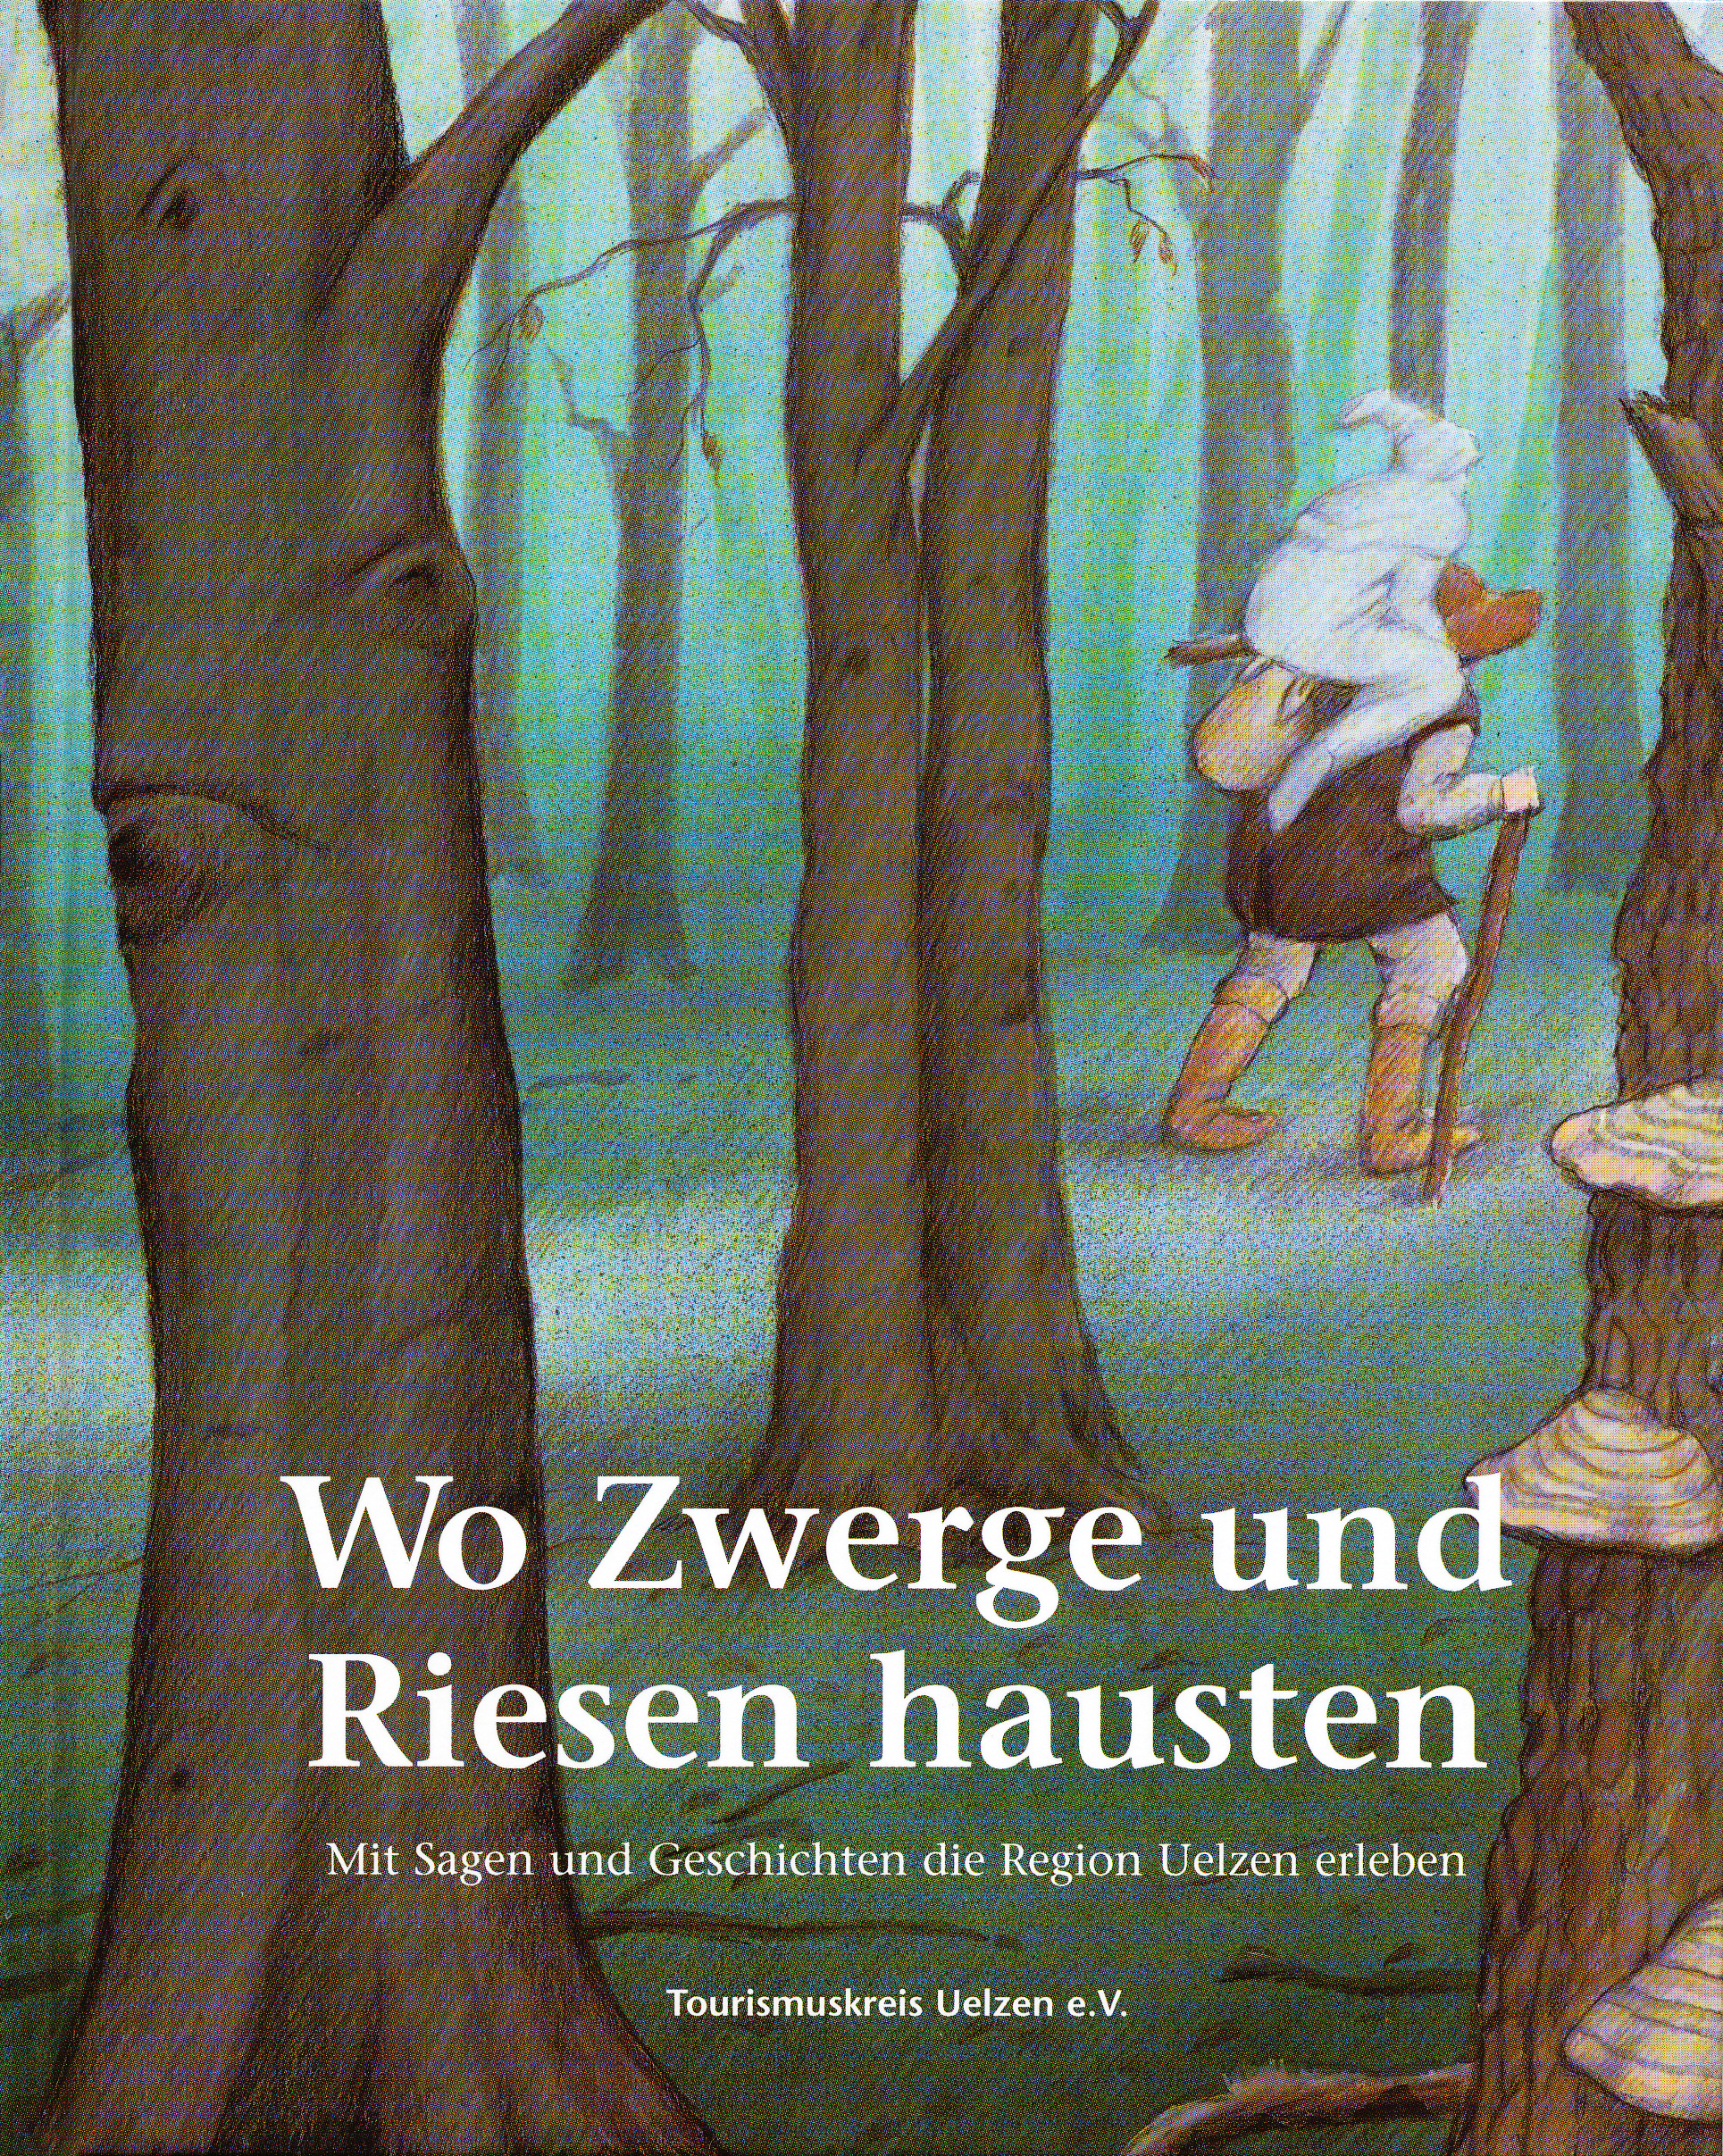 Sagenbuch "Wo Zwerge und Riesen hausten"